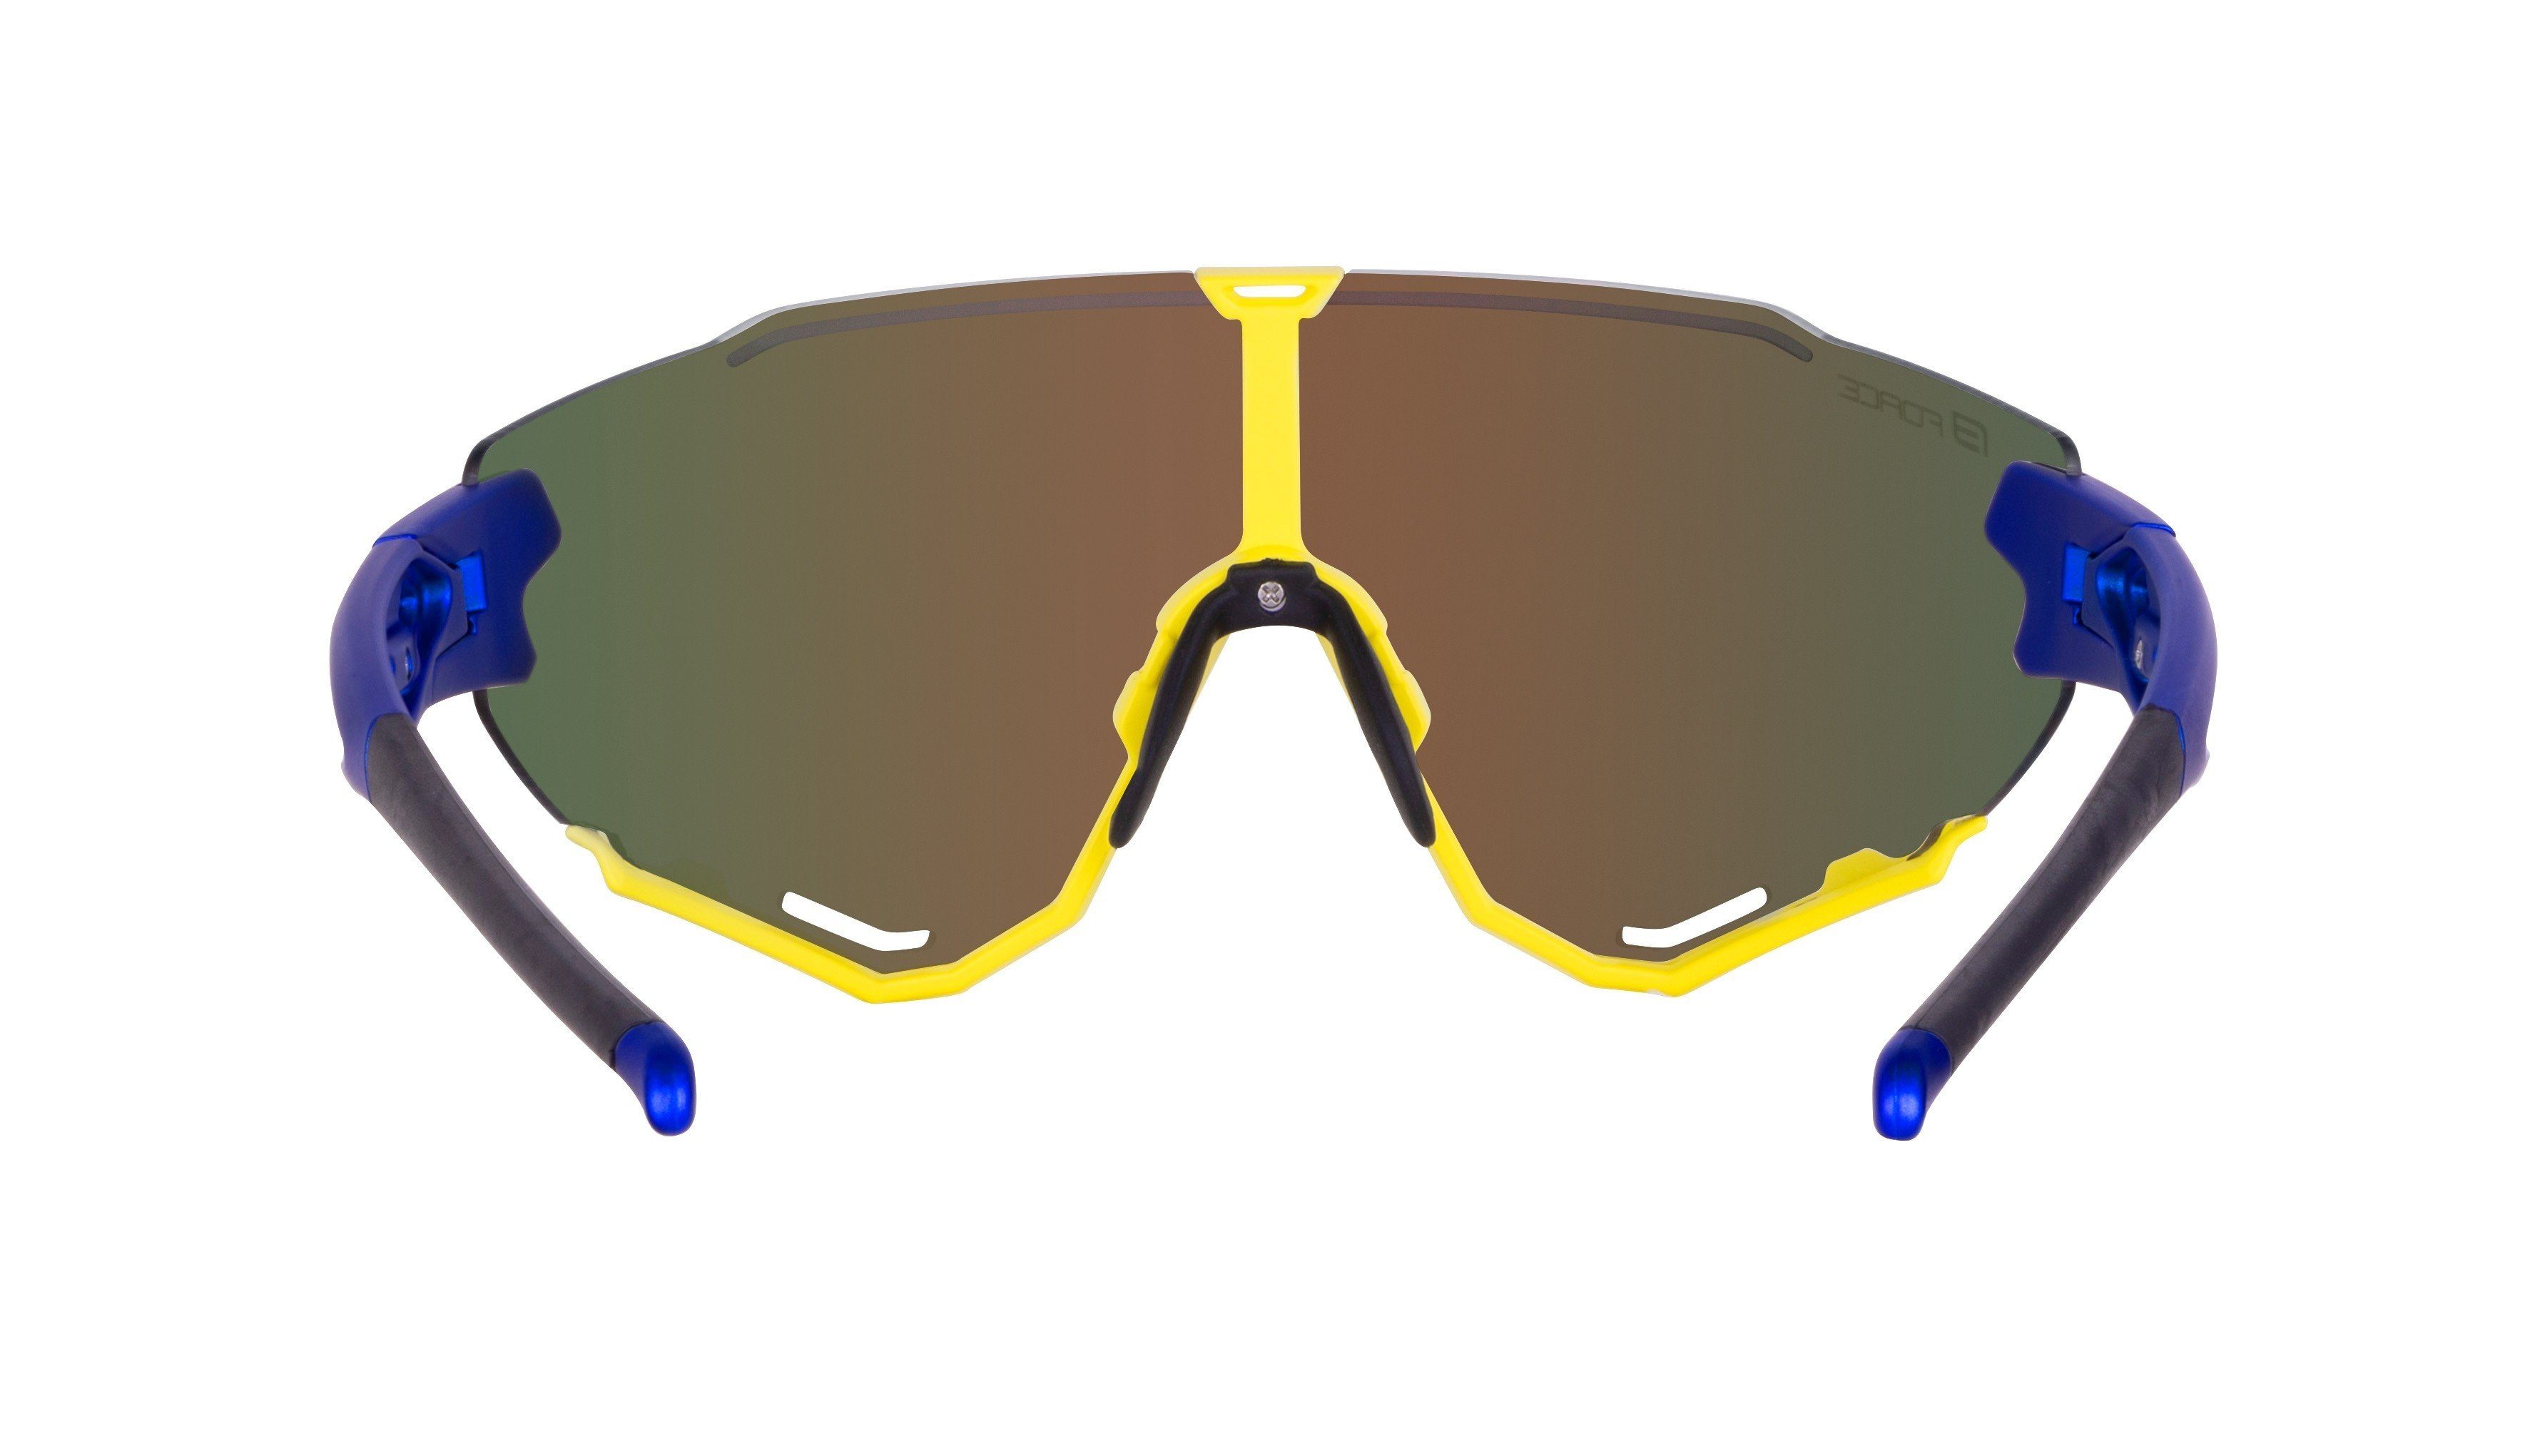 gespiegelt FORCE FORCE Sonnenbrille Fahrradbrille CREED gelb-blau